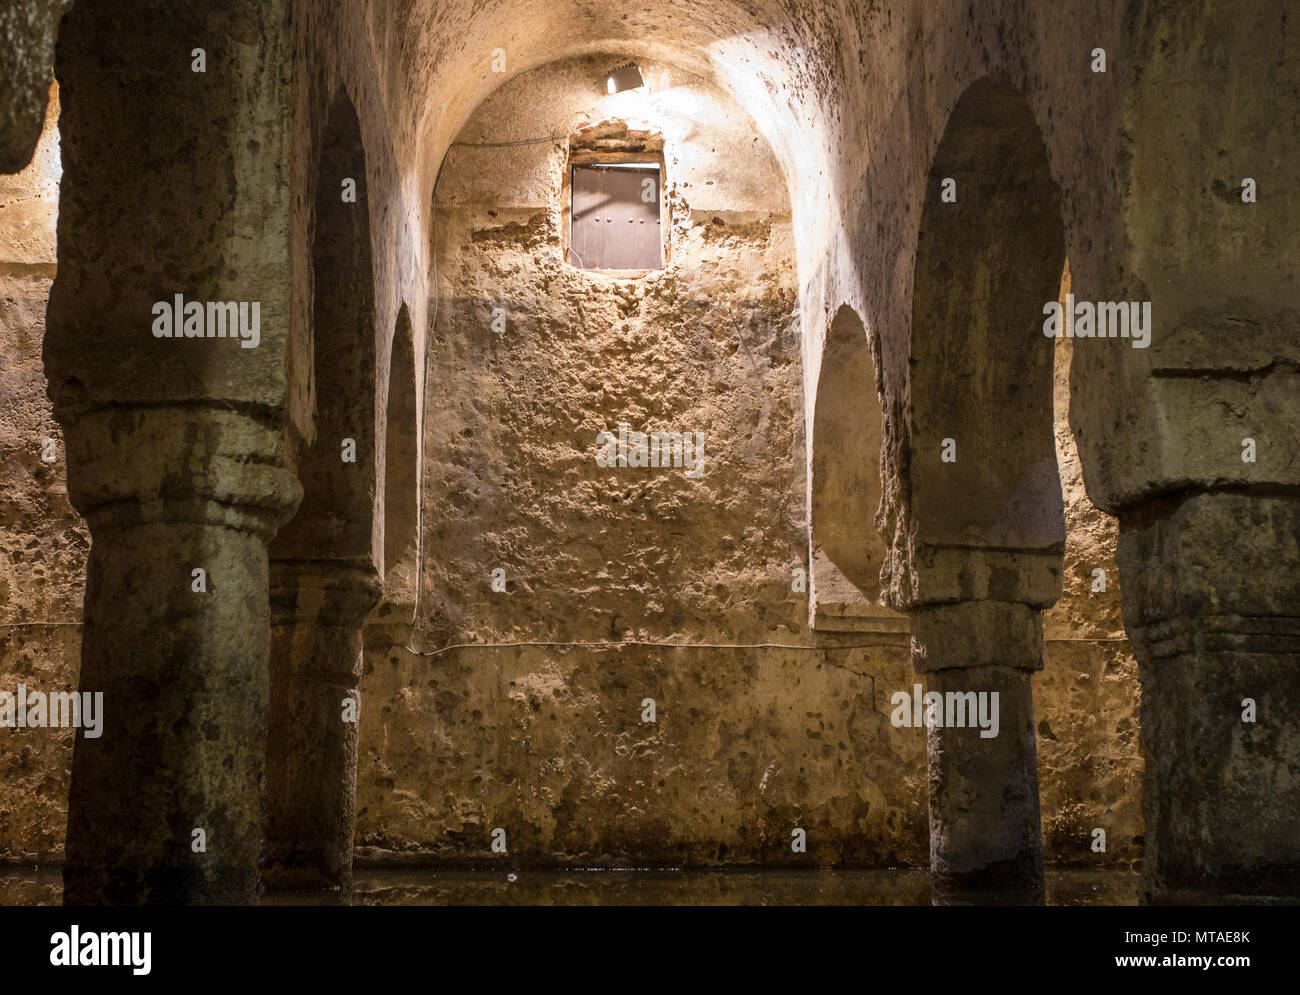 Cisterna araba o Aljibe, antica moschea durante il medioevo regola di musulmani in Spagna, Caceres Foto Stock